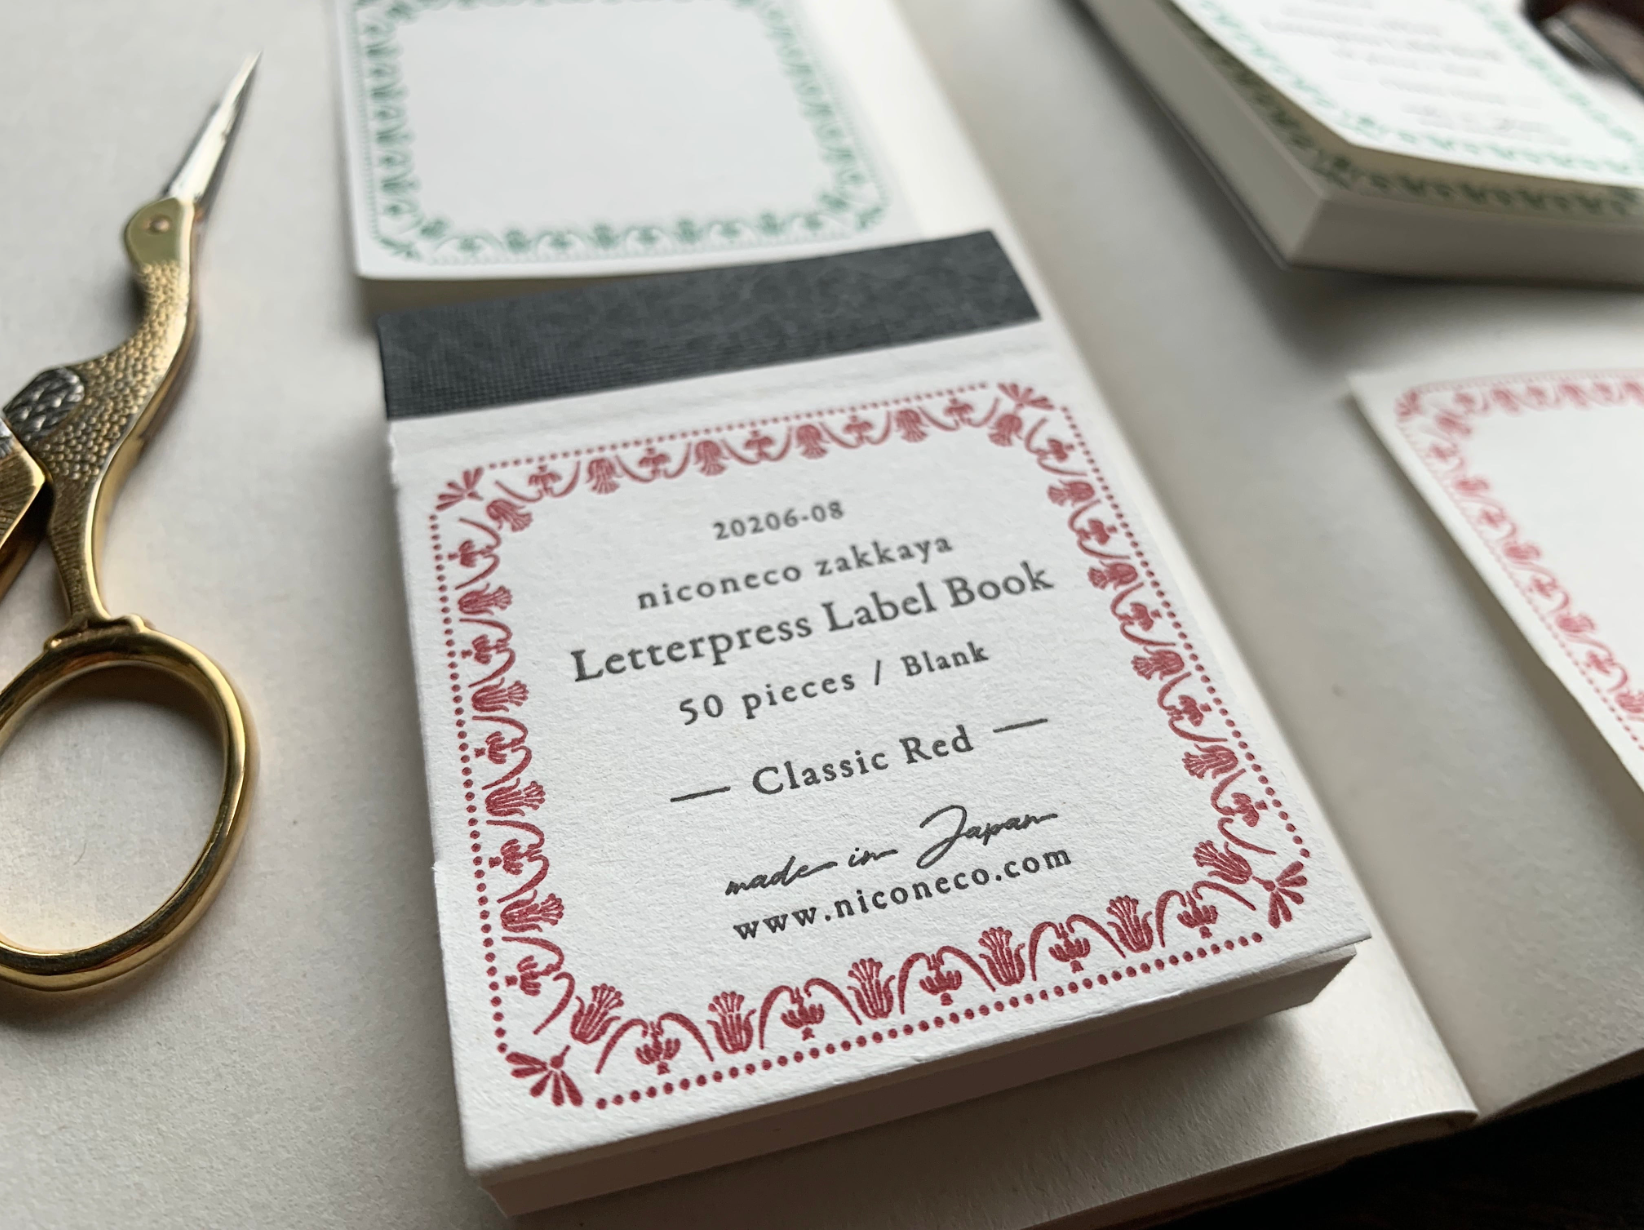 [Letterpress printing] Label book Vol.2 (Classic Red) niconeco collaboration 